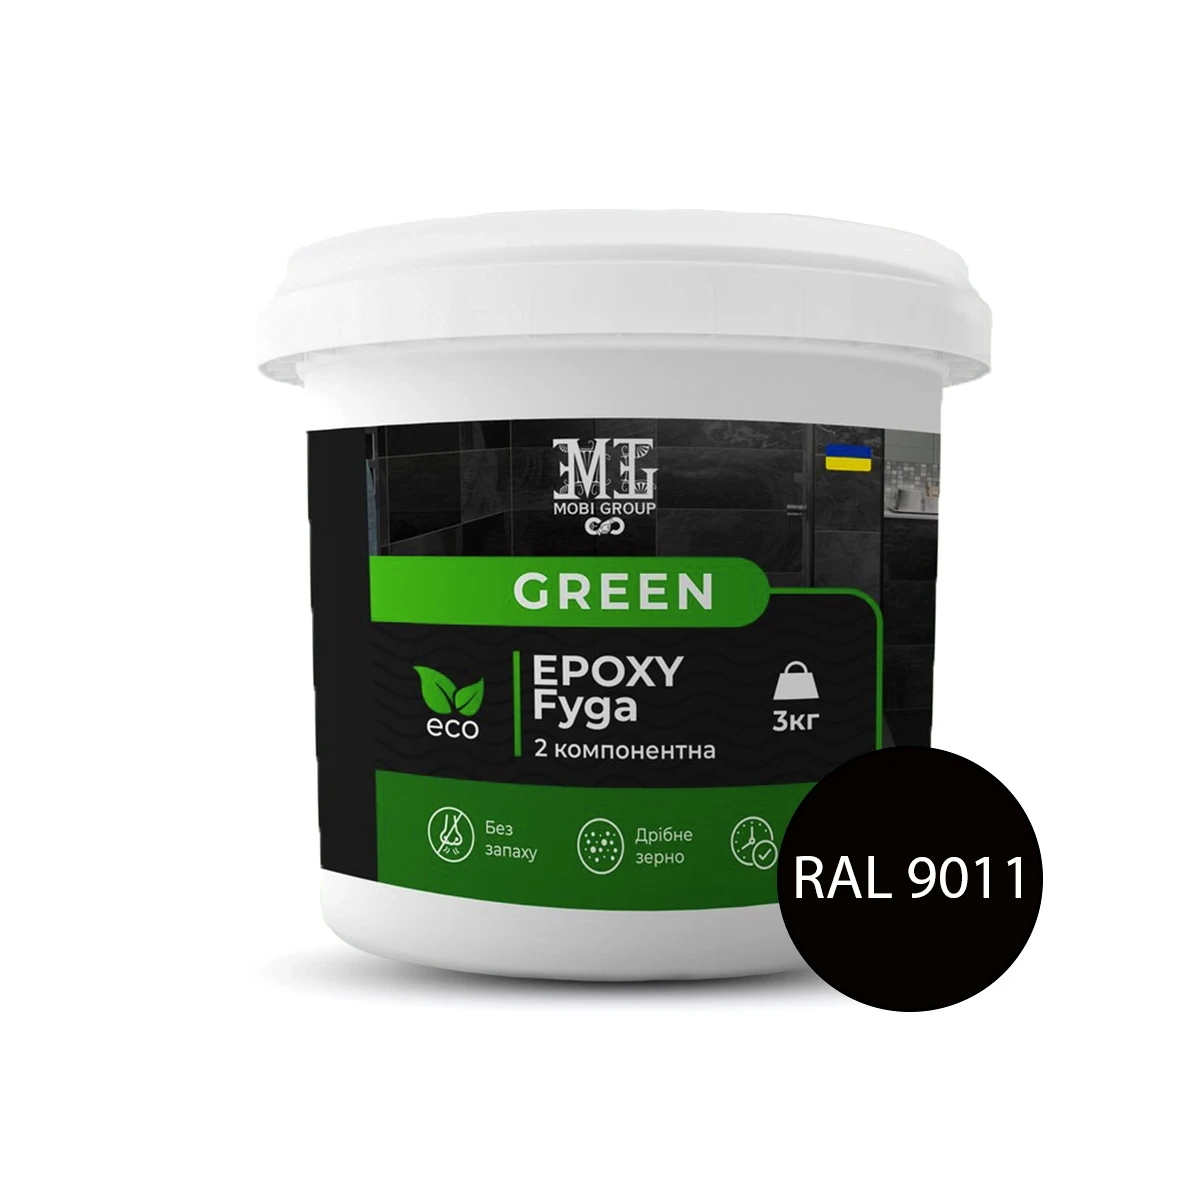 Епоксидна затирка (фуга) для плитки Green Epoxy Fyga 1кг (легко змивається, дрібне зерно) Чорний RAL 9011